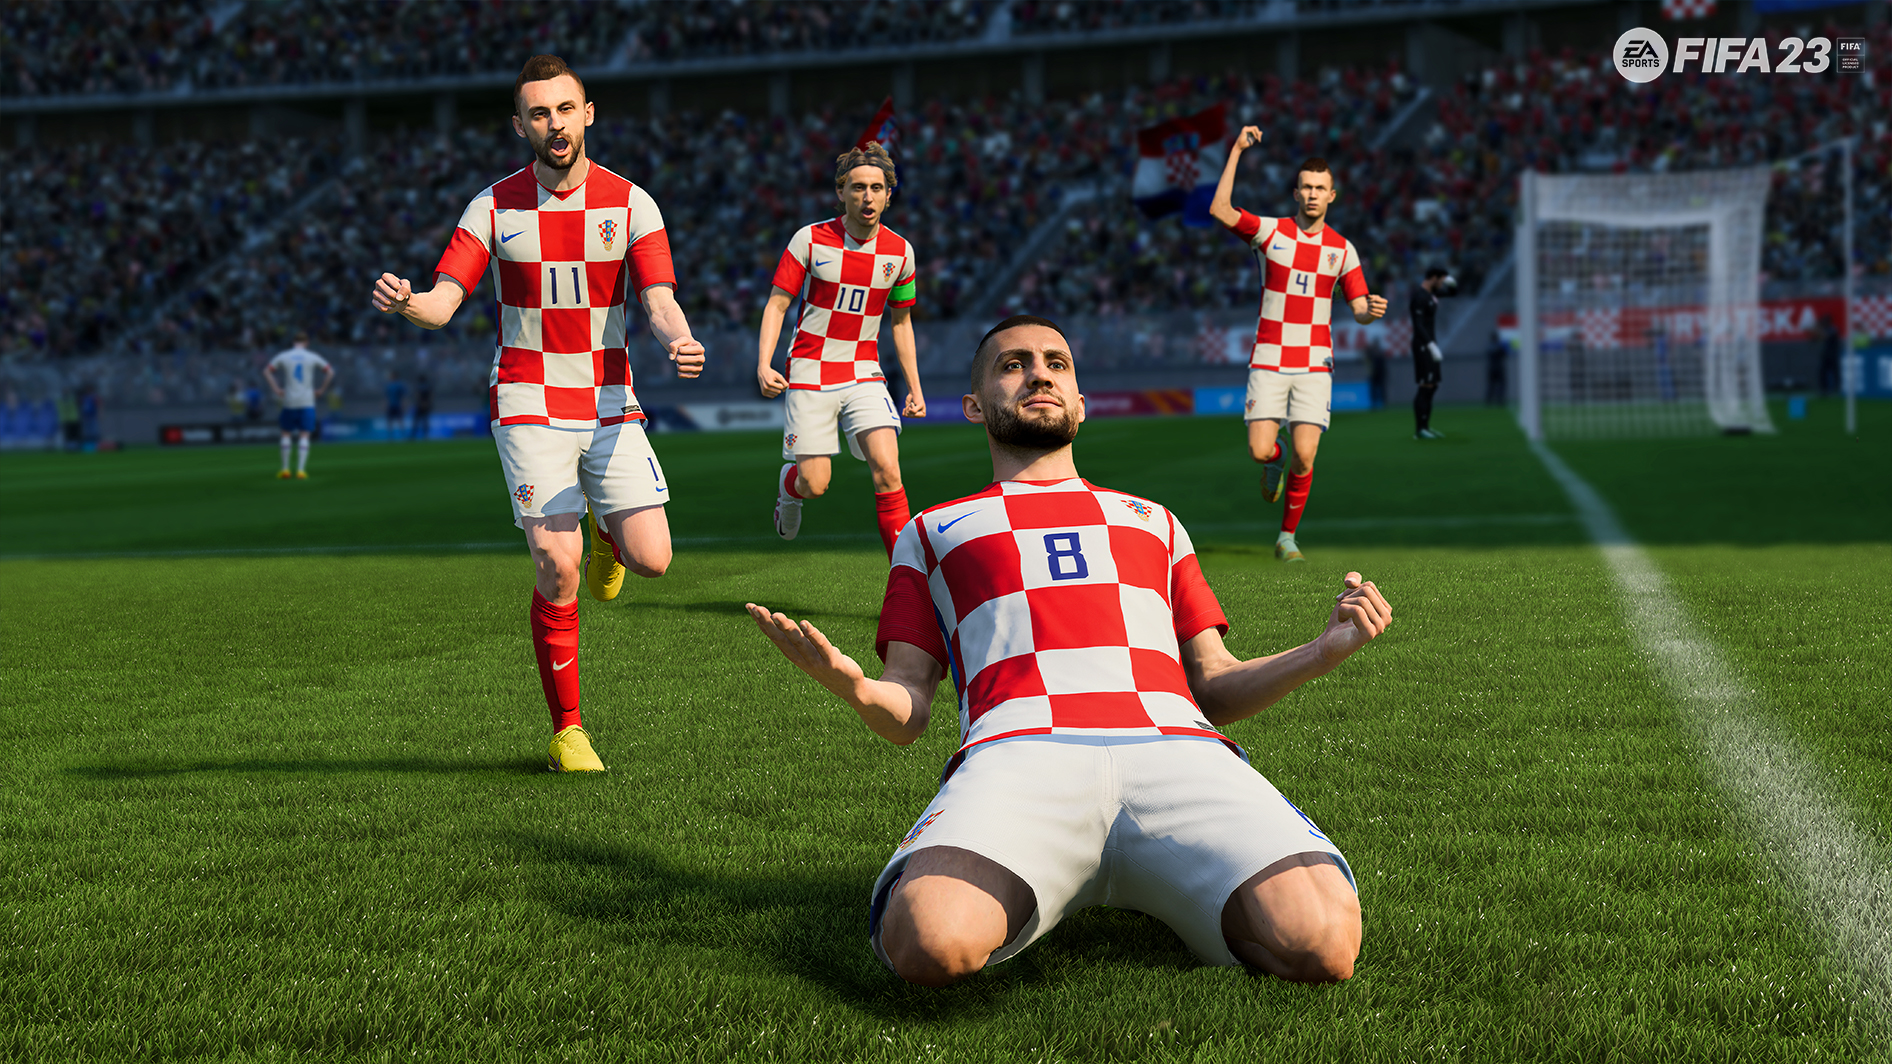 Croatia side celebrate in FIFA 23